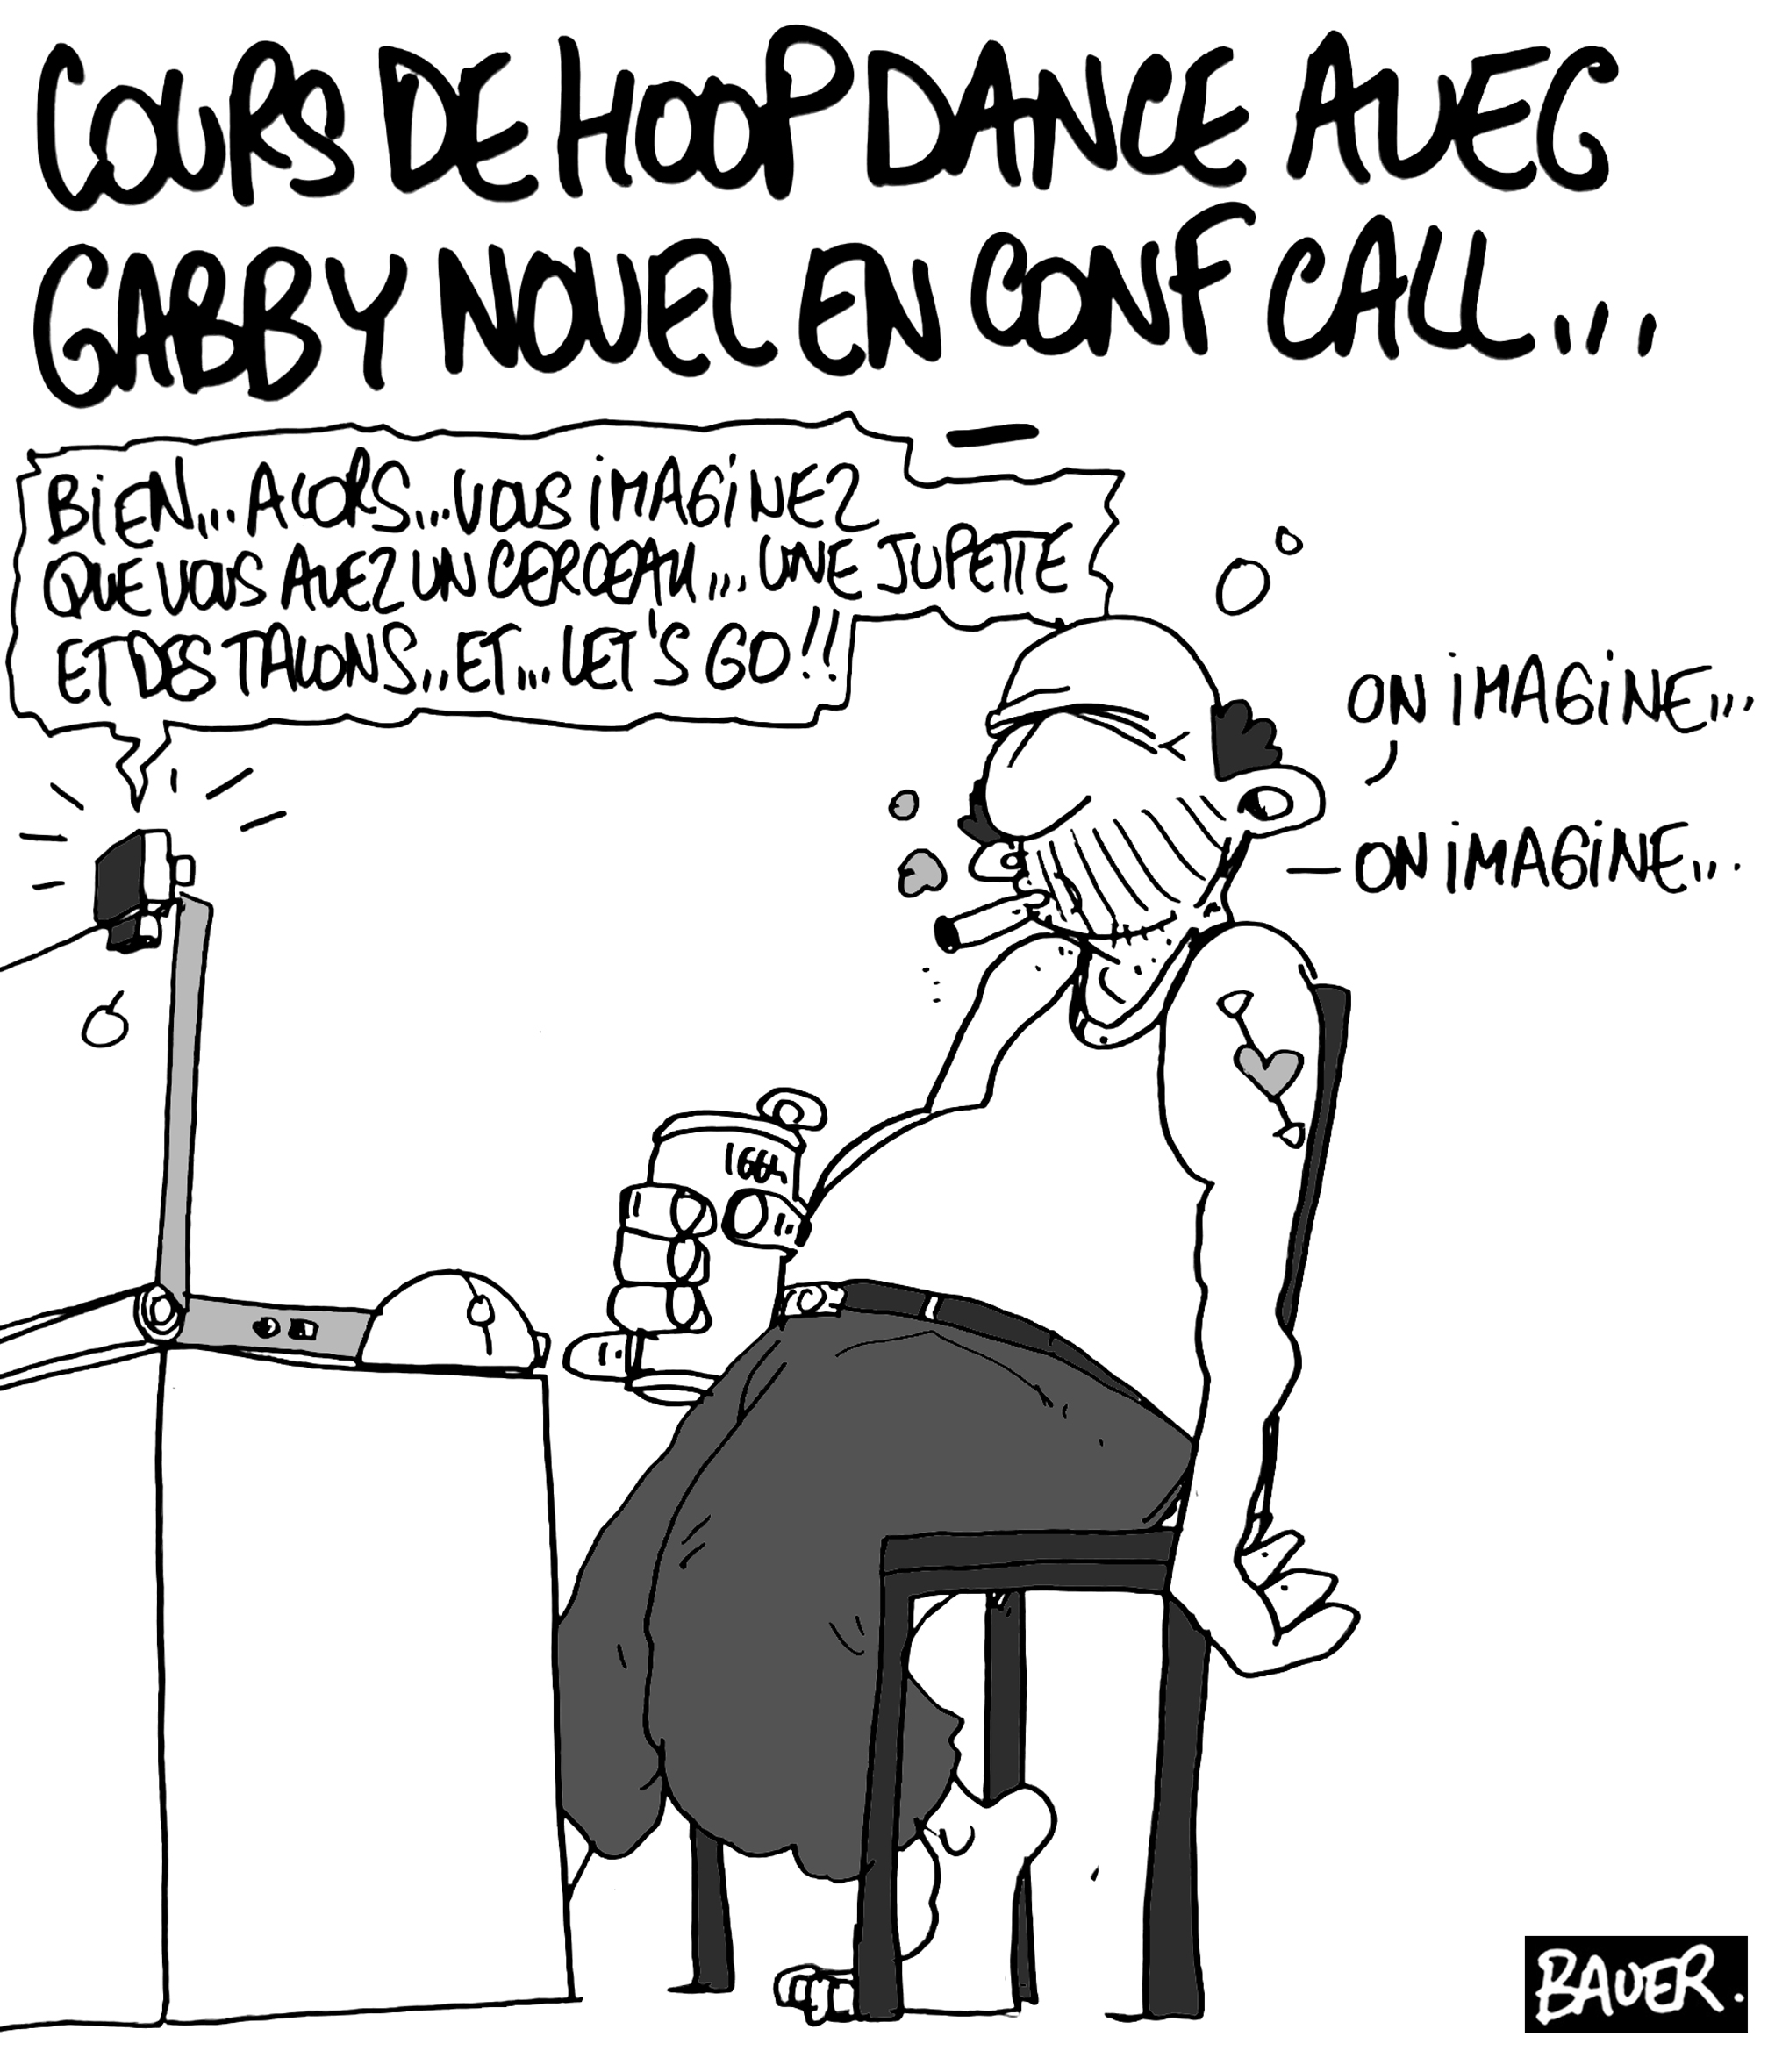 Gabby Novel conf call ©Bauer ©Absolument